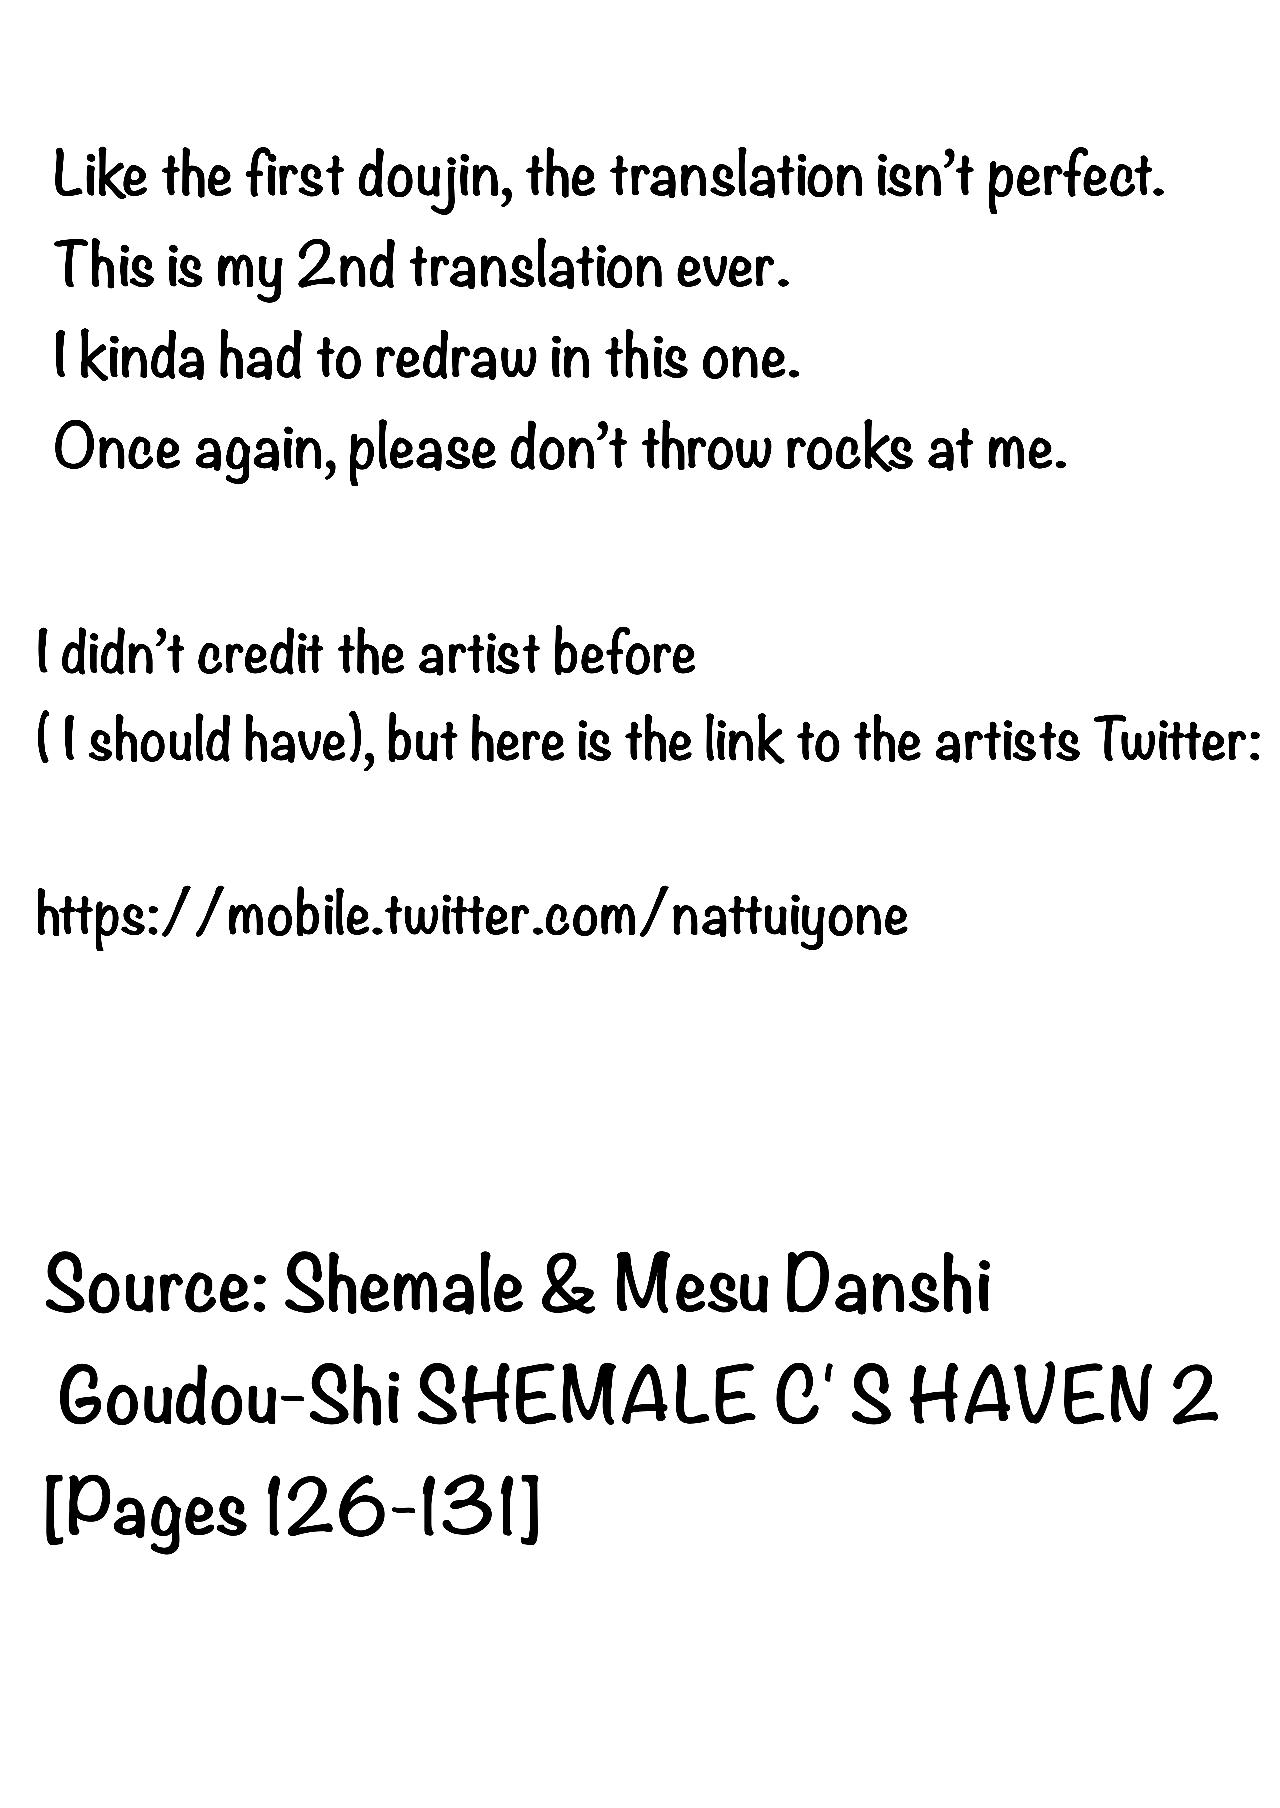 Chaturbate Shemale & Mesu Danshi Goudou-Shi SHEMALE C' S HAVEN 2 8teenxxx - Page 7